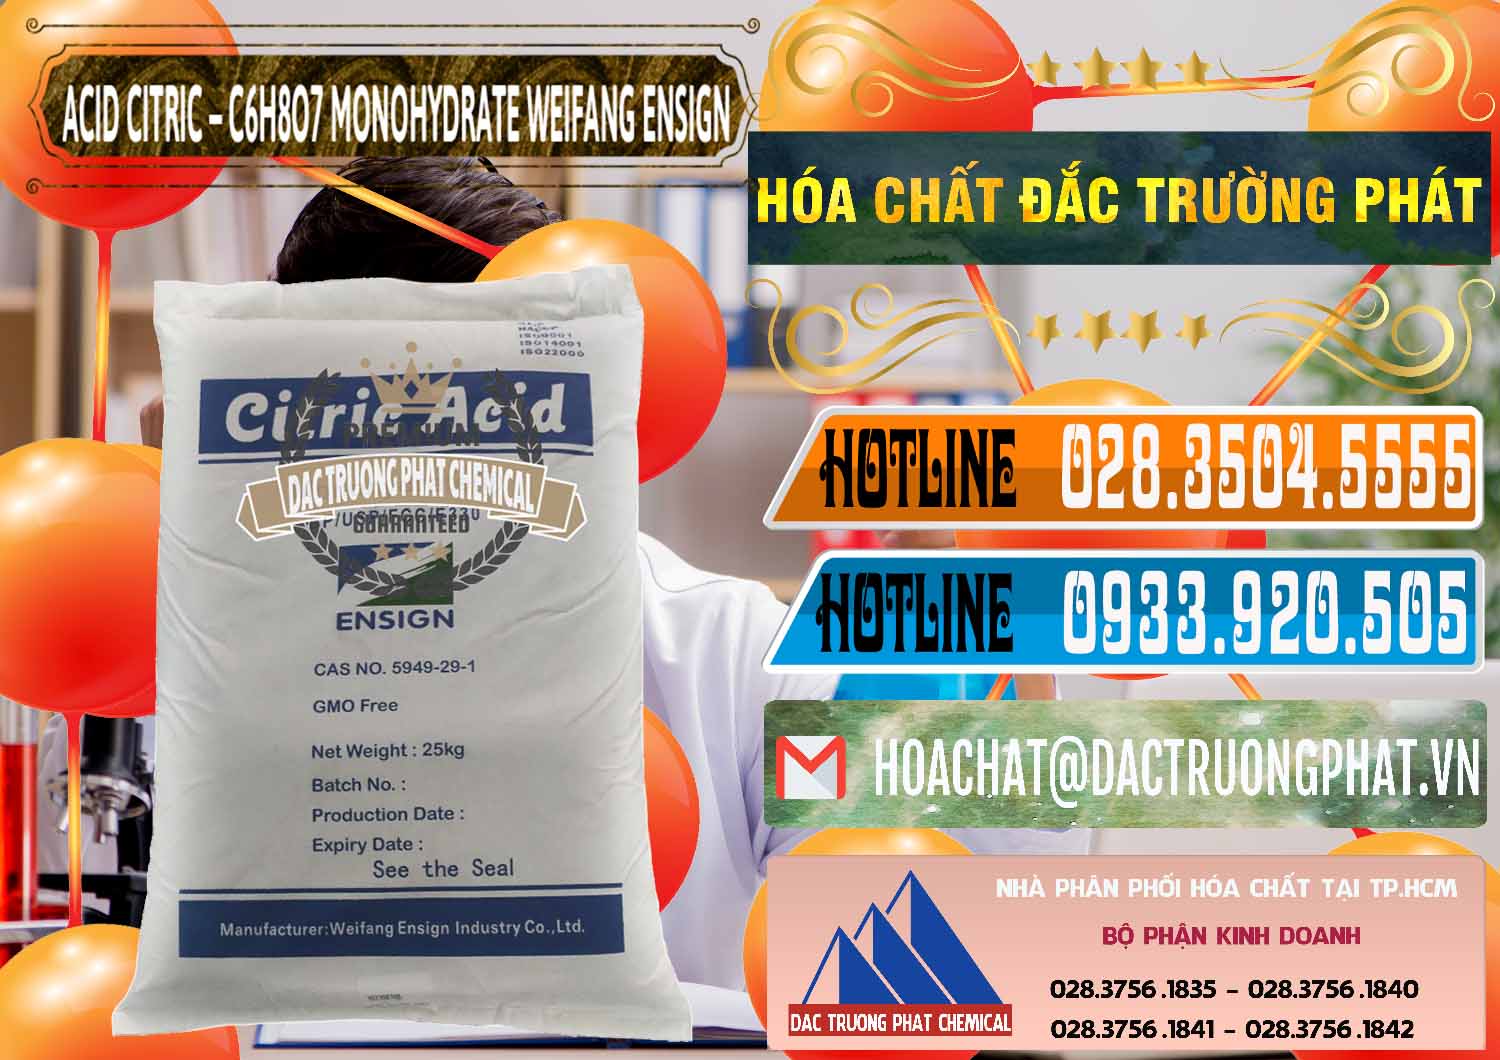 Nơi chuyên cung ứng _ bán Acid Citric - Axit Citric Monohydrate Weifang Trung Quốc China - 0009 - Nơi chuyên kinh doanh và phân phối hóa chất tại TP.HCM - stmp.net